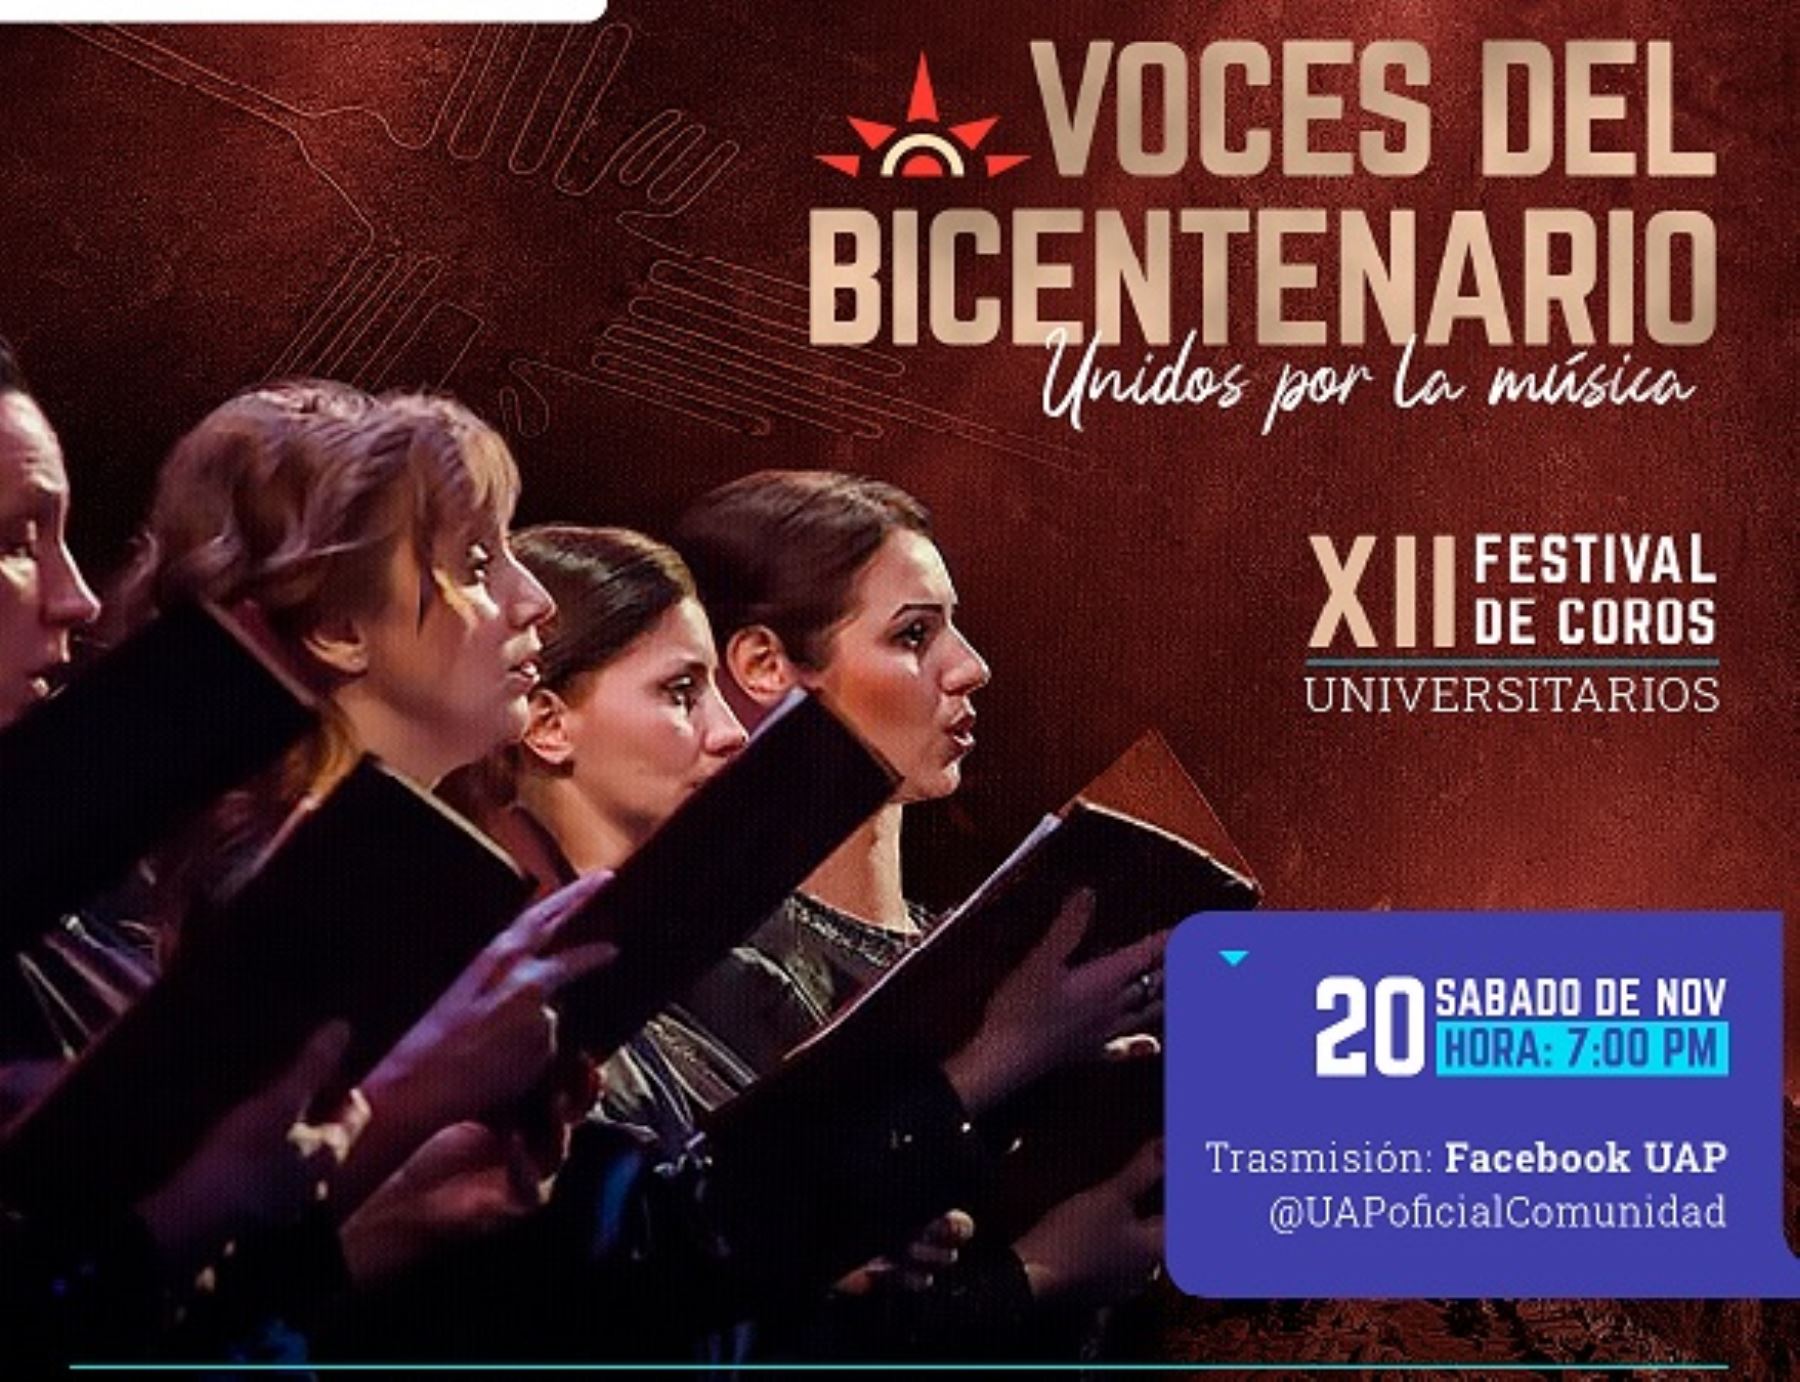 Este sábado 20 se llevará a cabo el XII Festival virtual de Coros Universitarios.